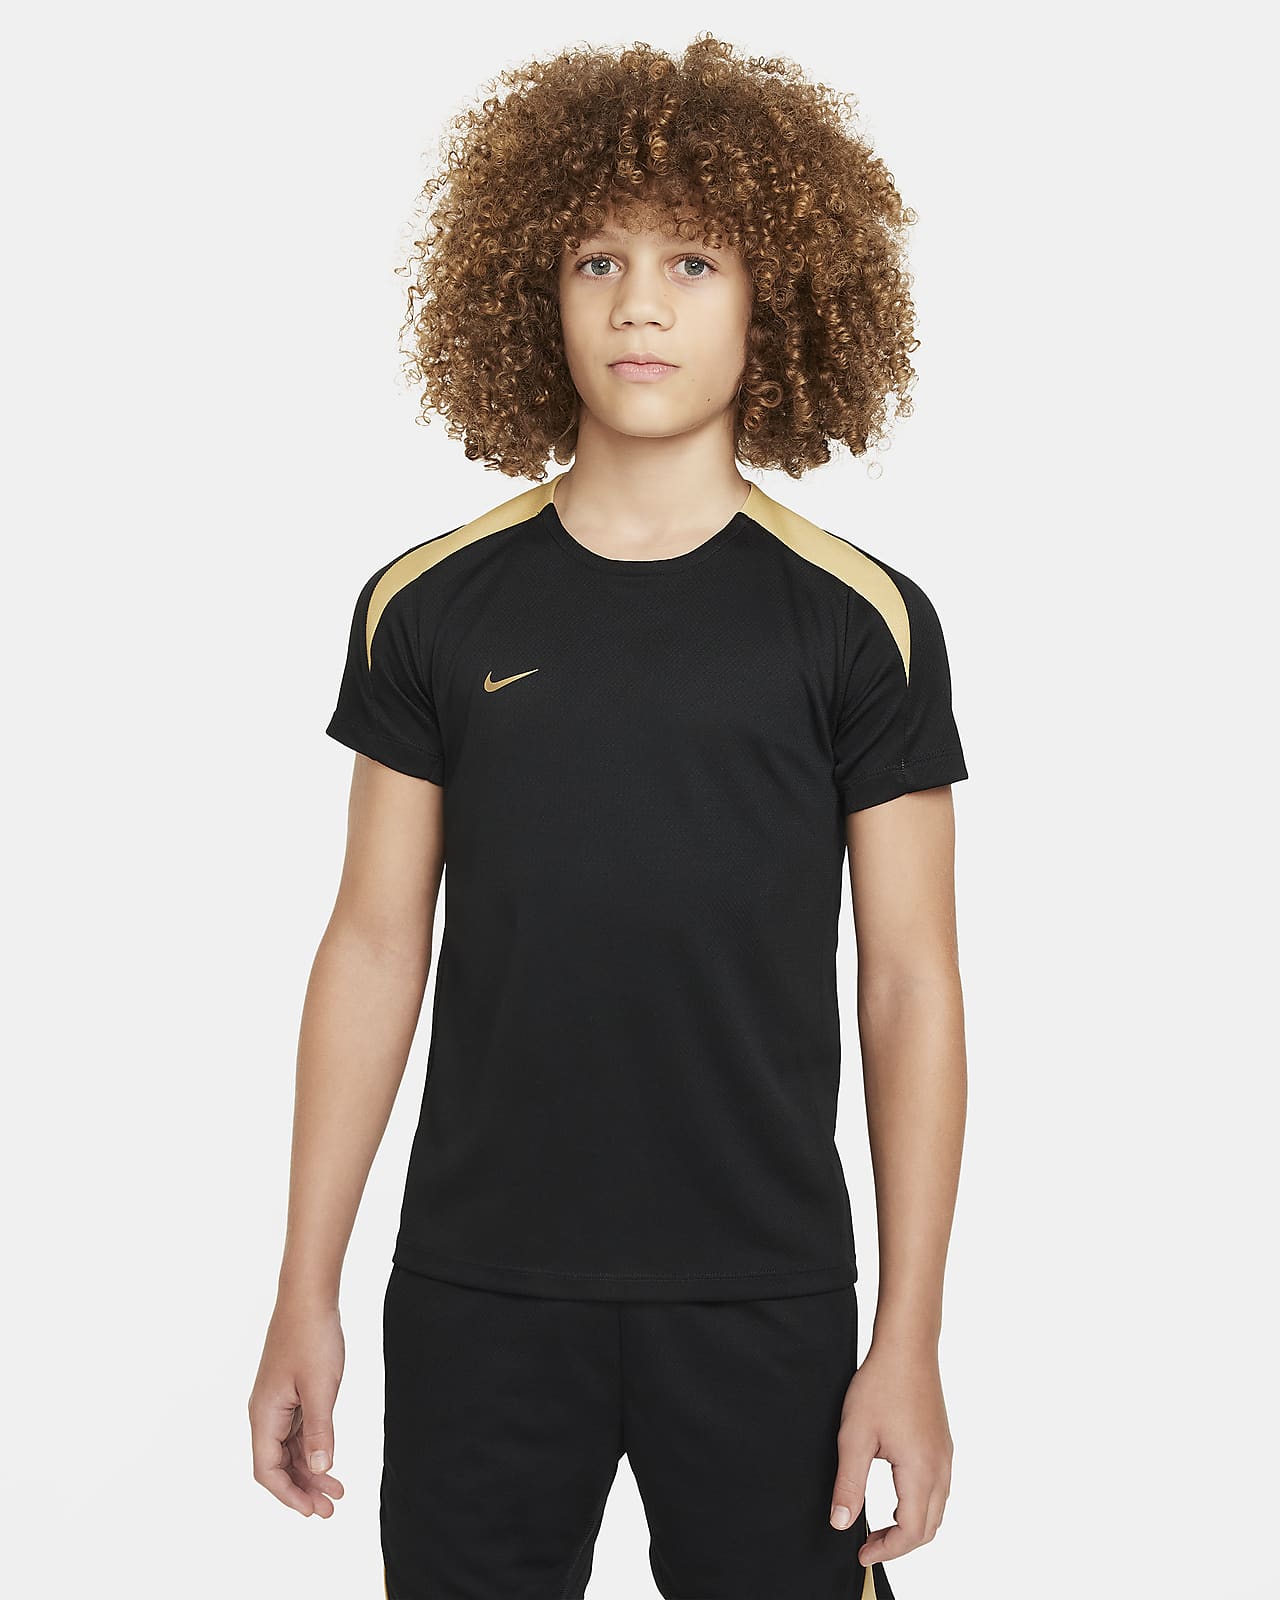 Κοντομάνικη ποδοσφαιρική μπλούζα Nike Dri-FIT Strike για μεγάλα παιδιά